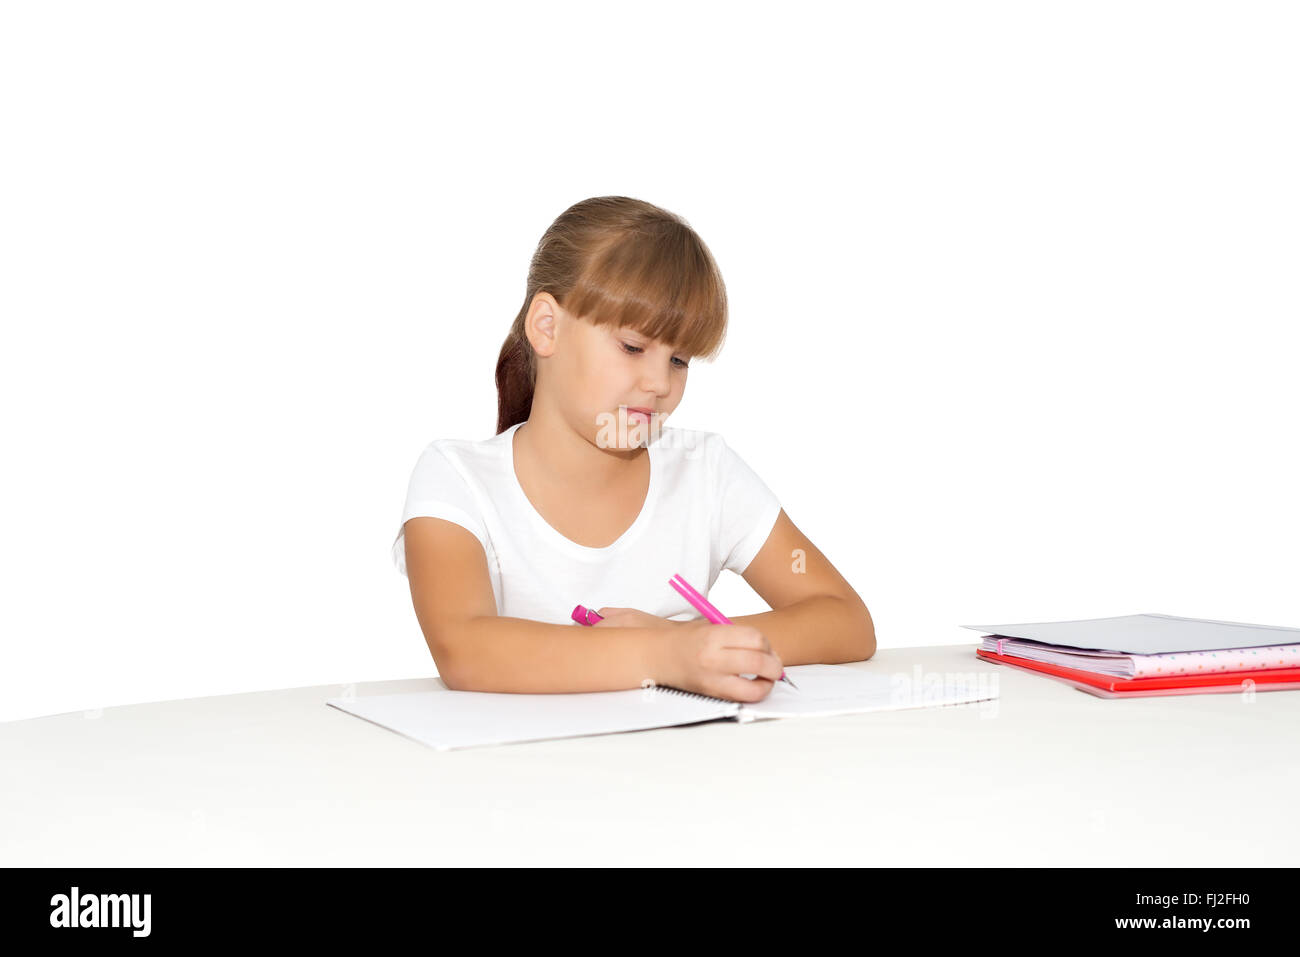 Little girl doing homework at the desk isolated Stock Photo